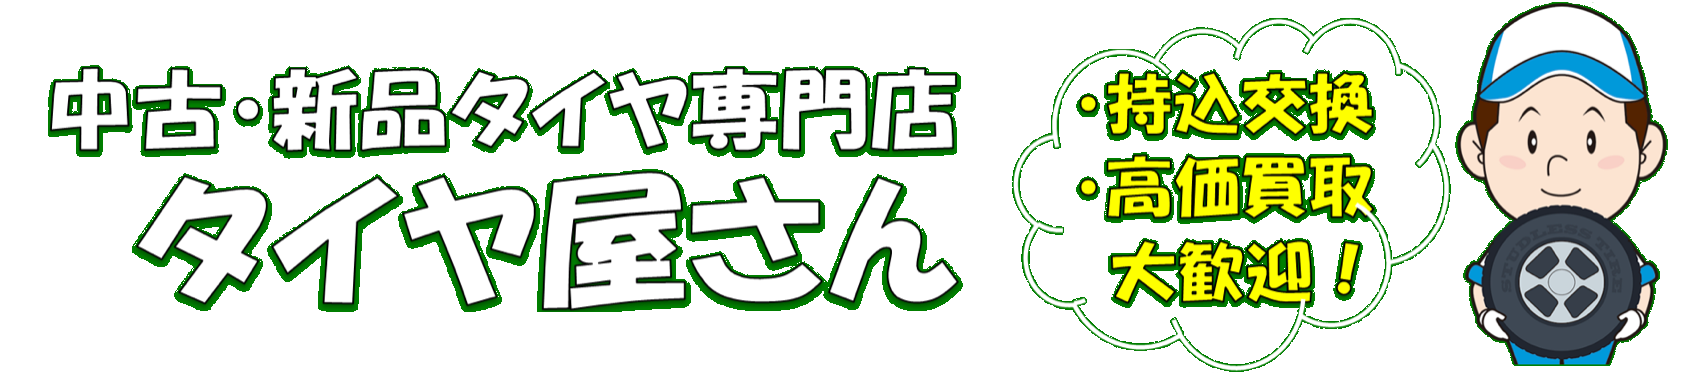 タイヤ交換 牛久・つくば・土浦 タイヤ屋さん_logo_2